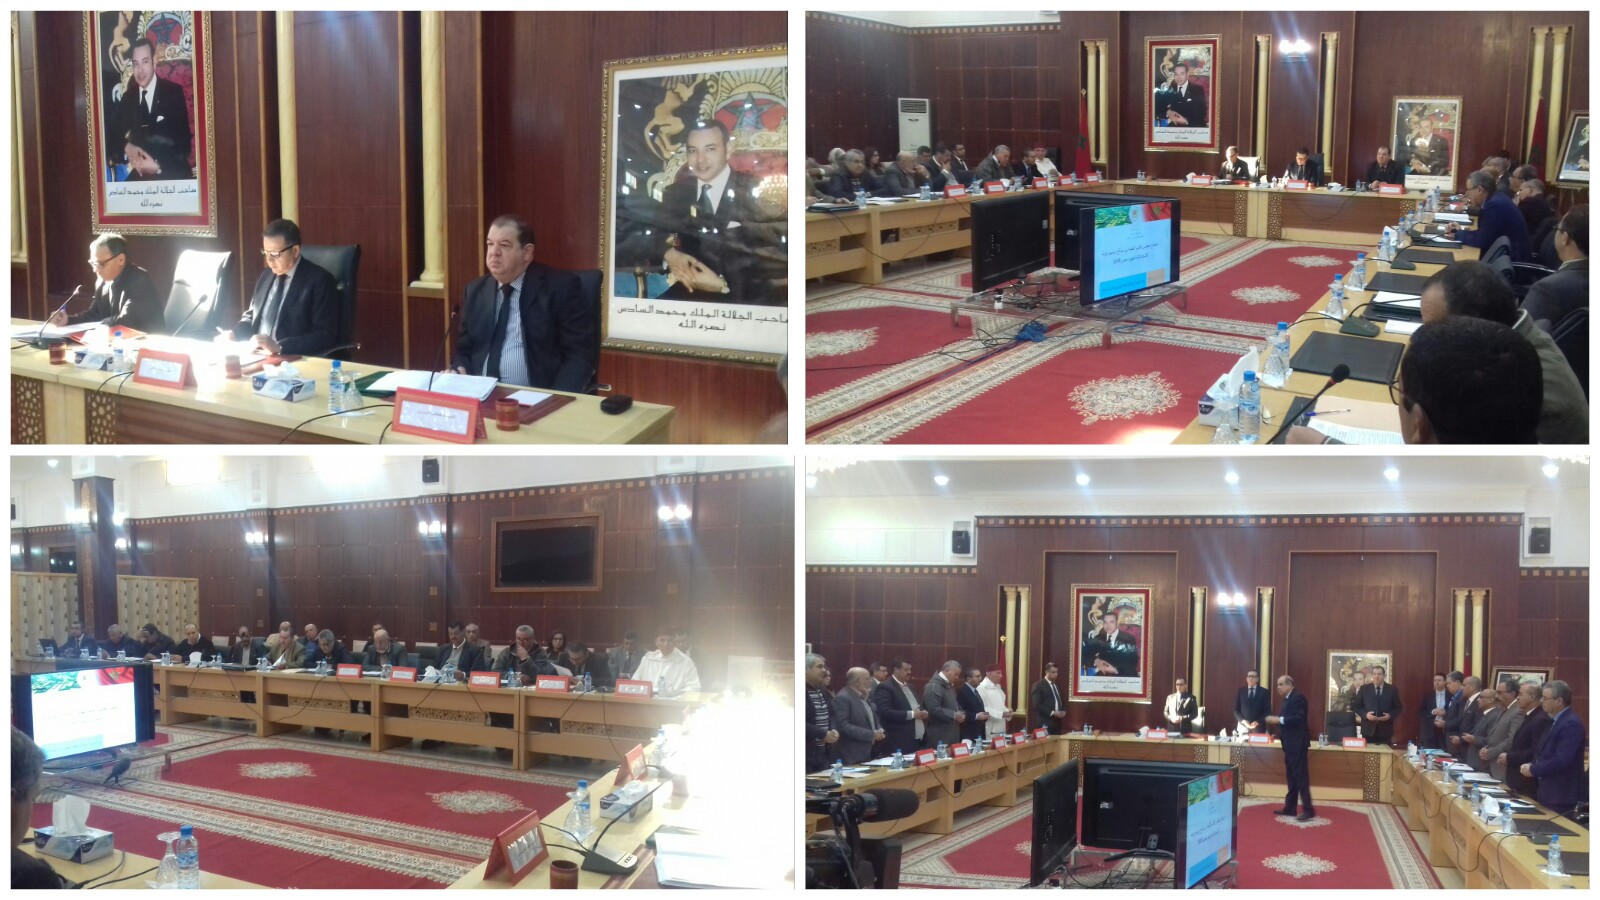 المجلس الإقليمي للفقيه بن صالح يعقد دورته الاستثنائية و مشاريع مهمة تأهيلية واقتصادية واجتماعية لتنمية الإقليم